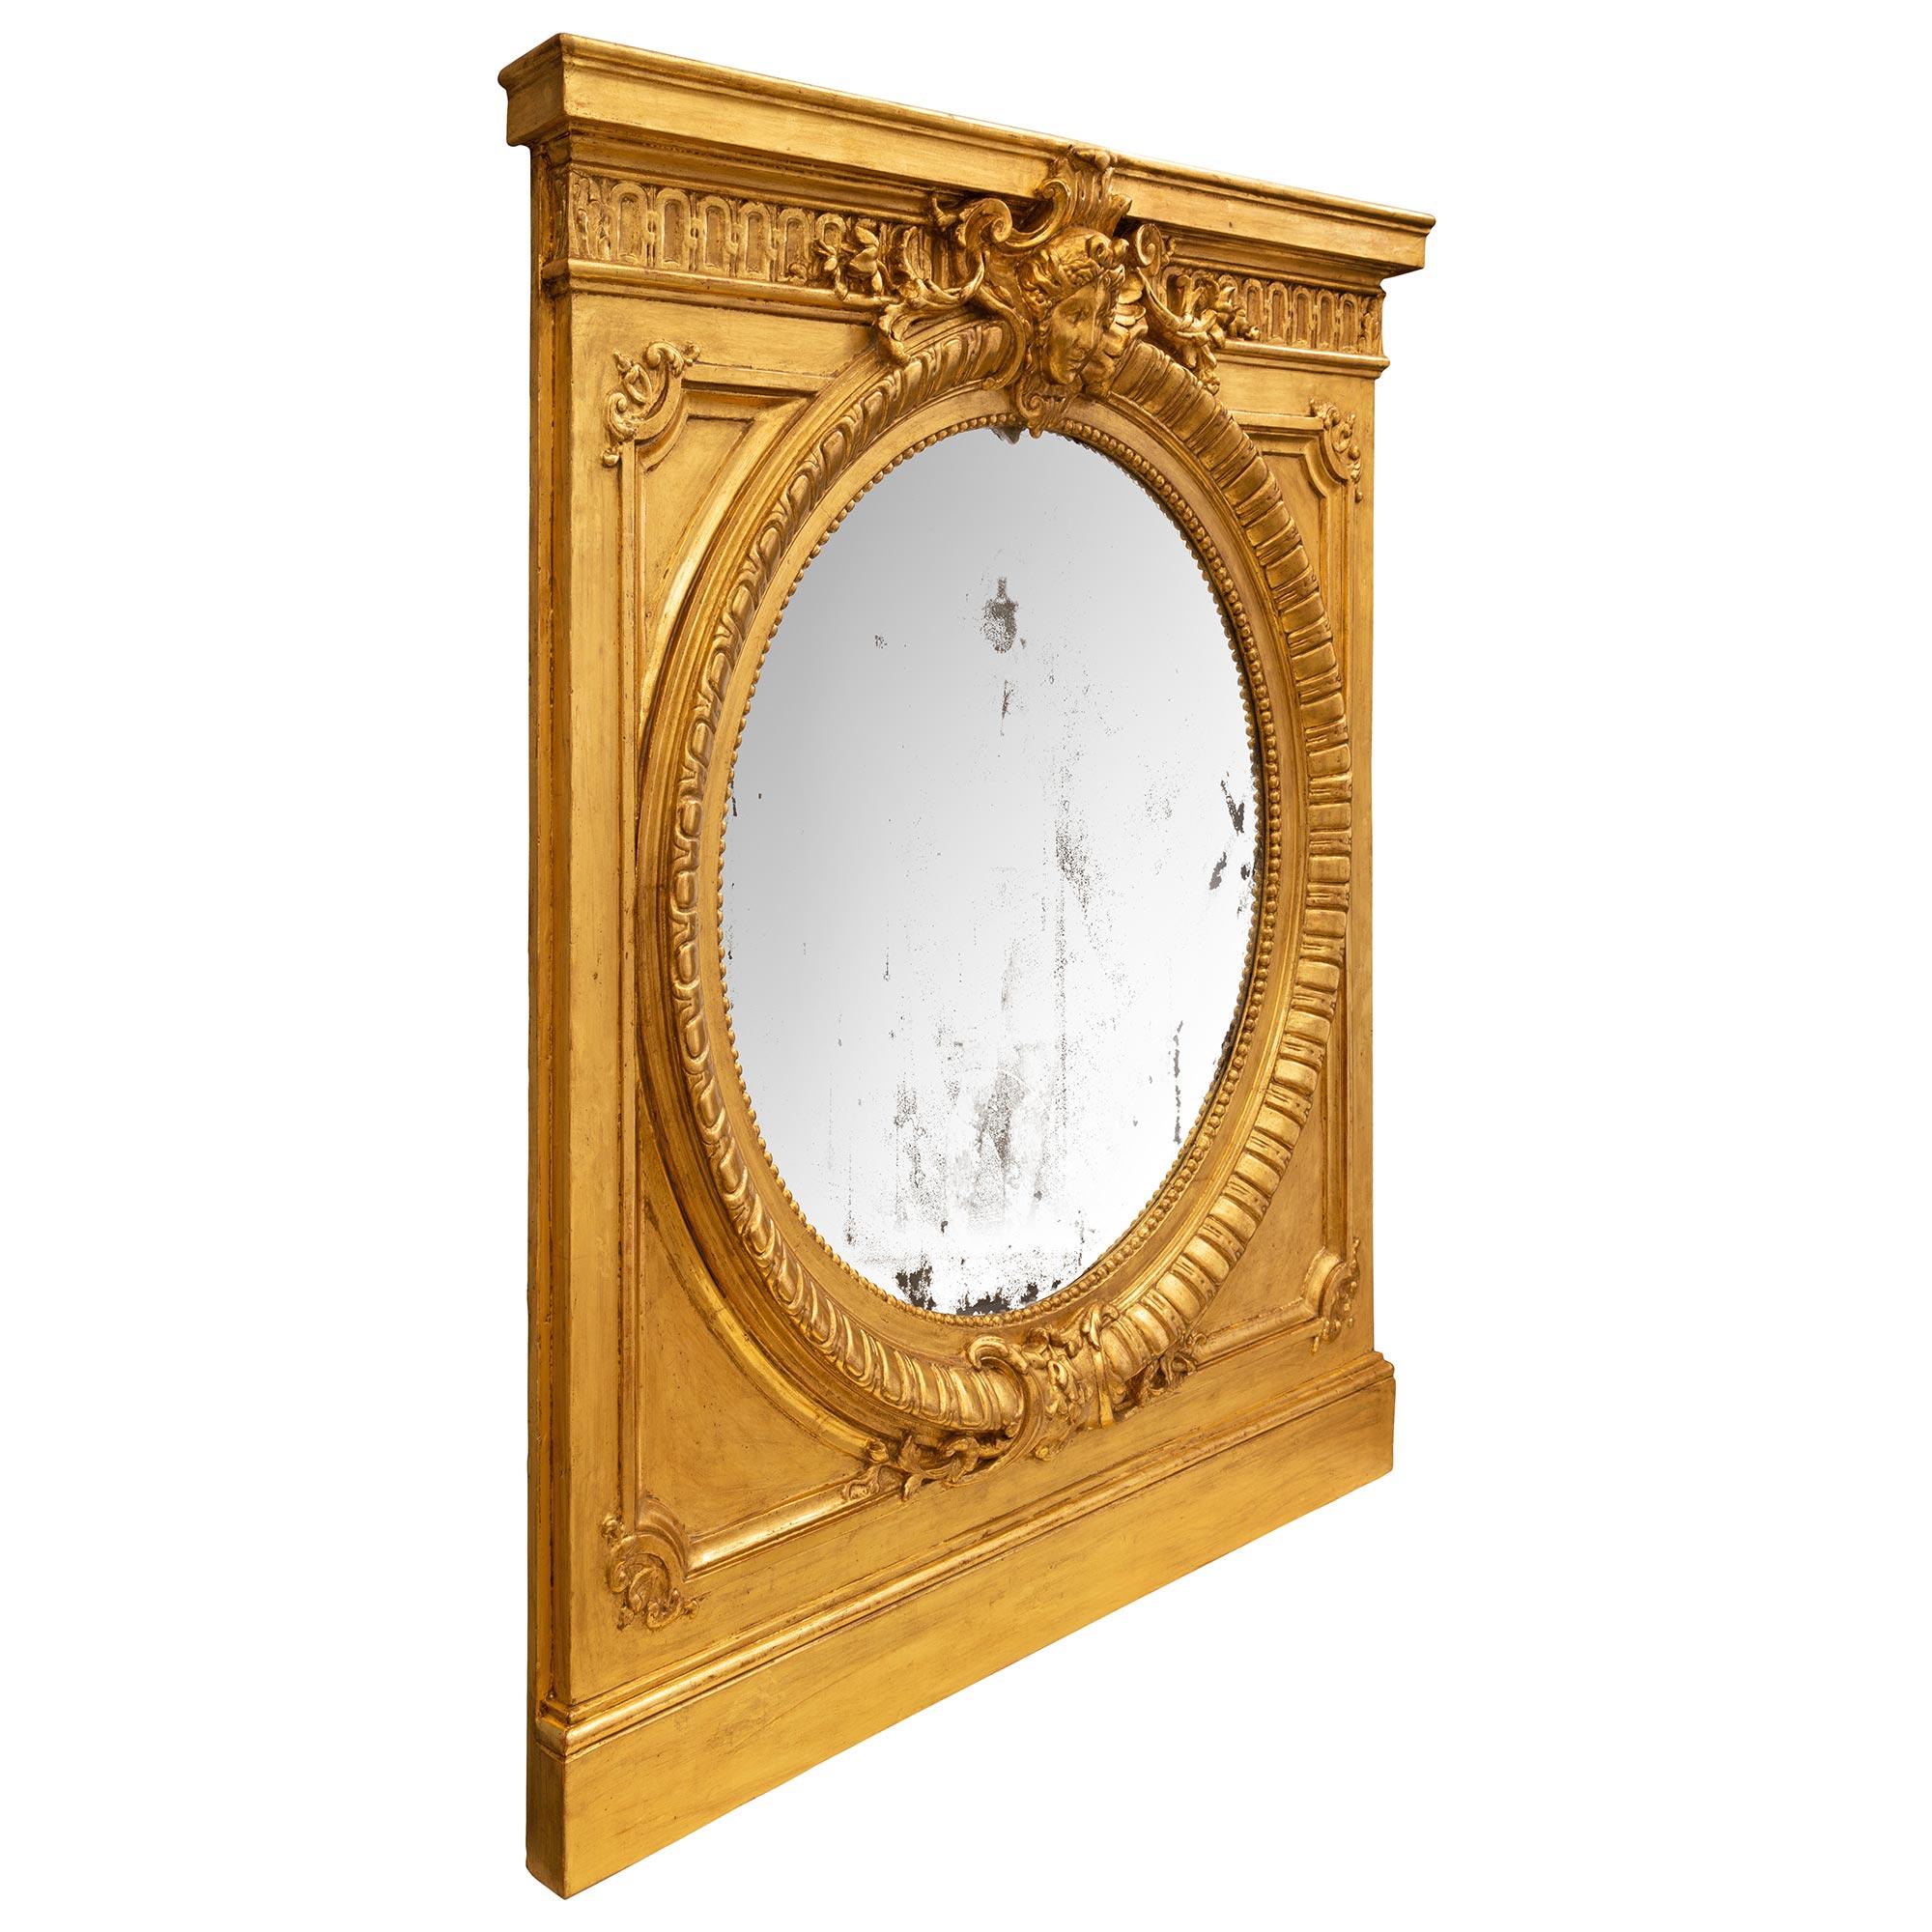 Un élégant et extrêmement décoratif miroir en bois doré de style Louis XVI du 19ème siècle. Au centre se trouve le miroir circulaire d'origine, encadré d'une fine bordure cannelée perlée et mouchetée. Le cadre présente une base droite avec un motif